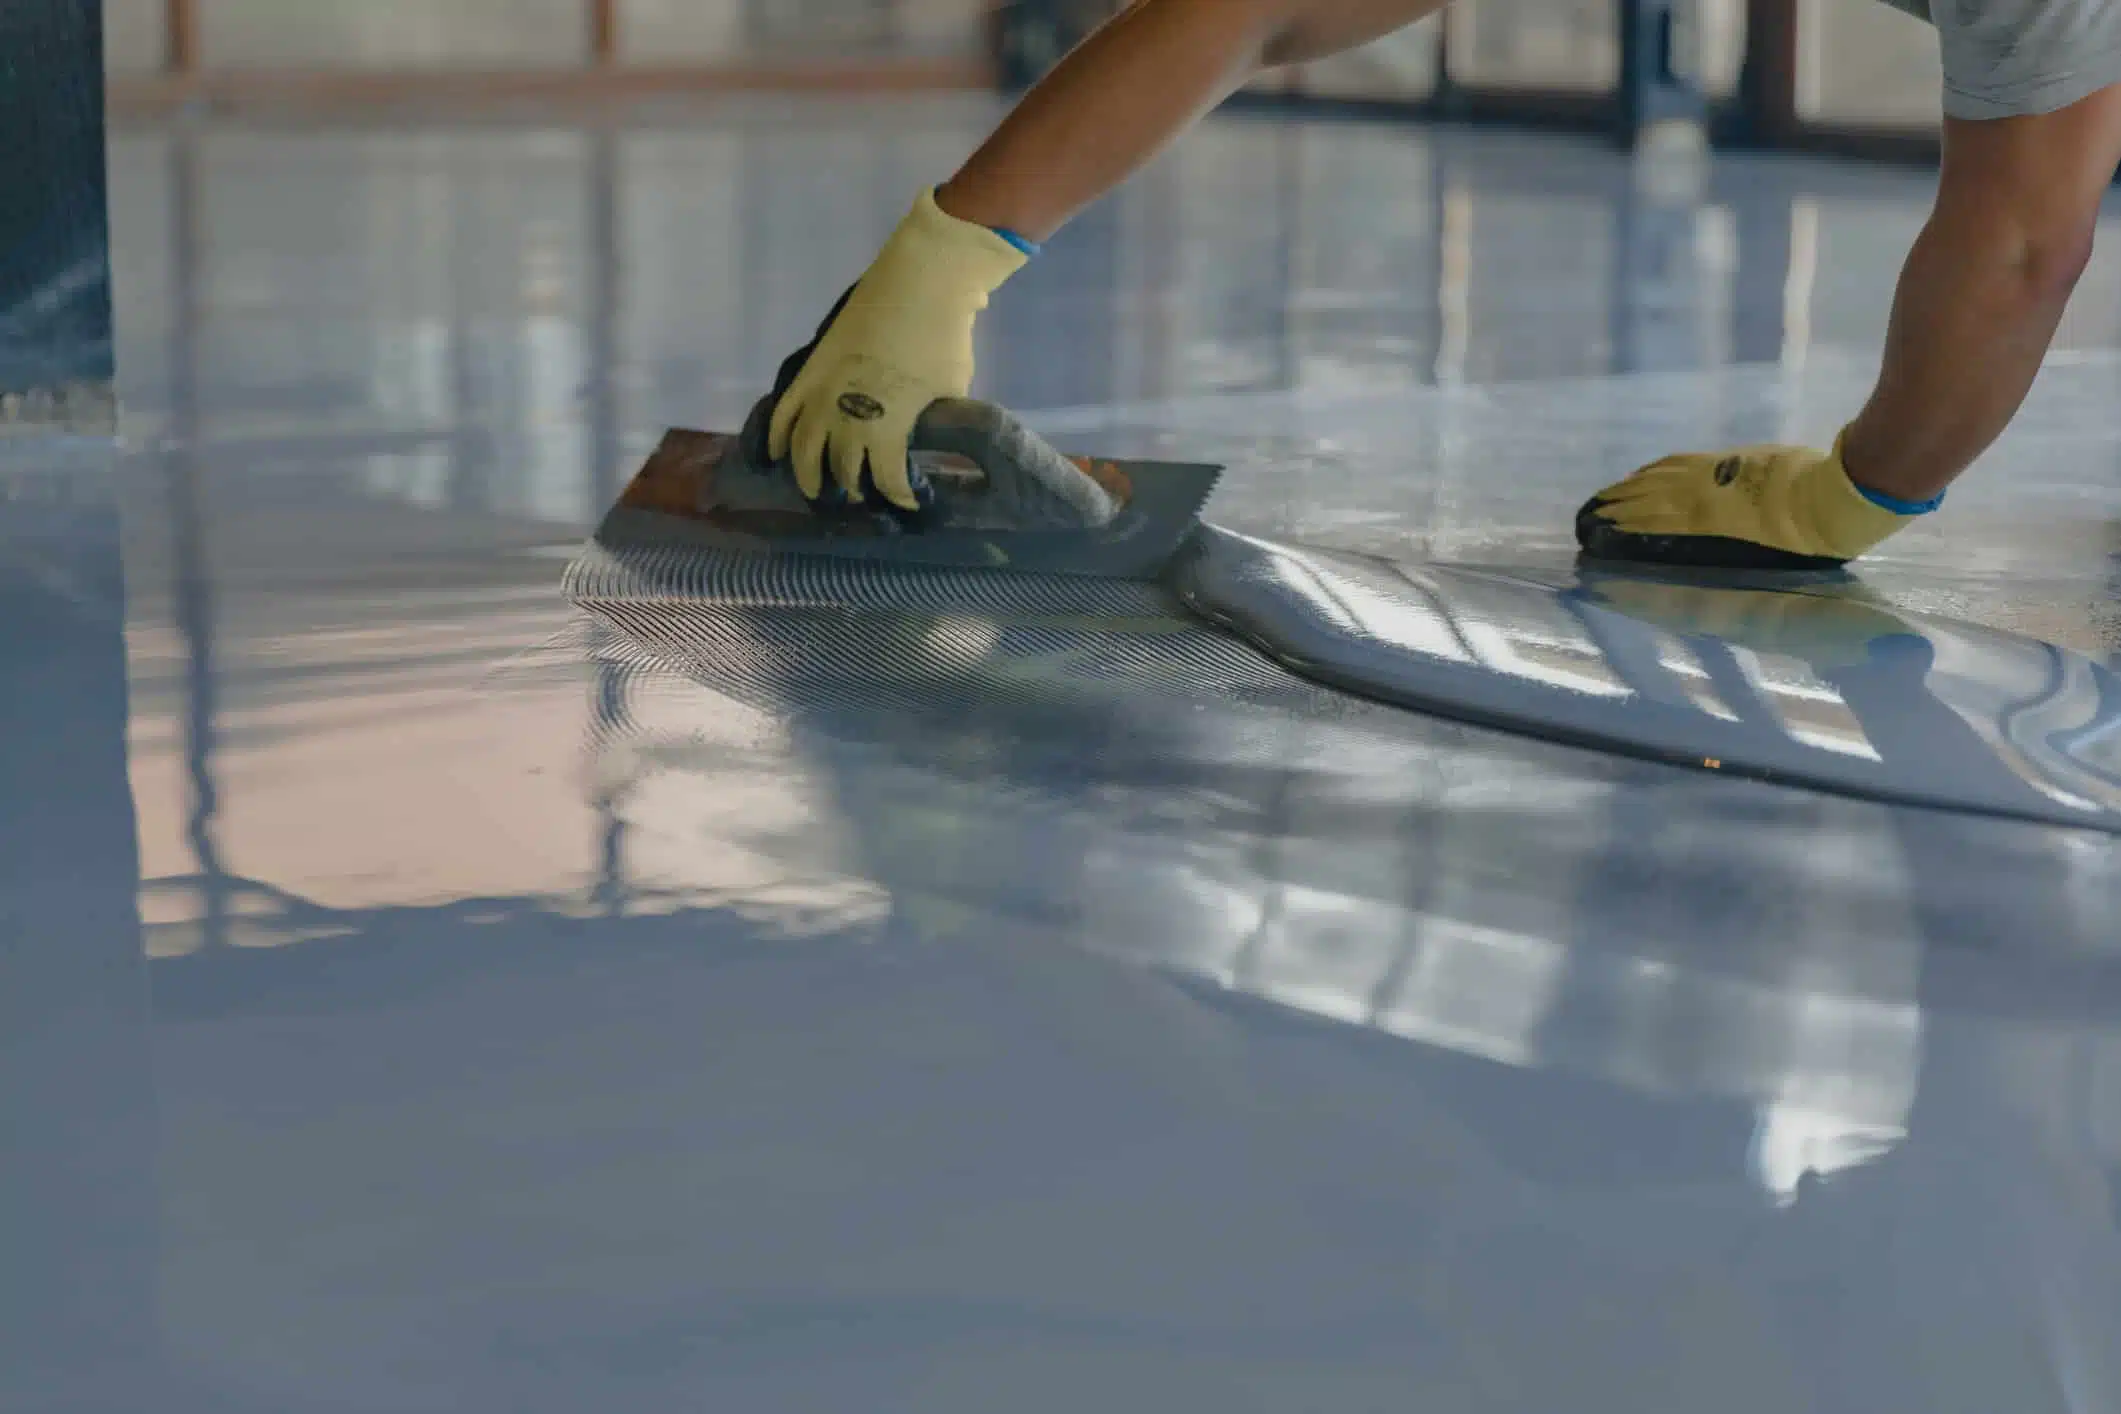 Epoxy floor coating being applied to warehouse floor